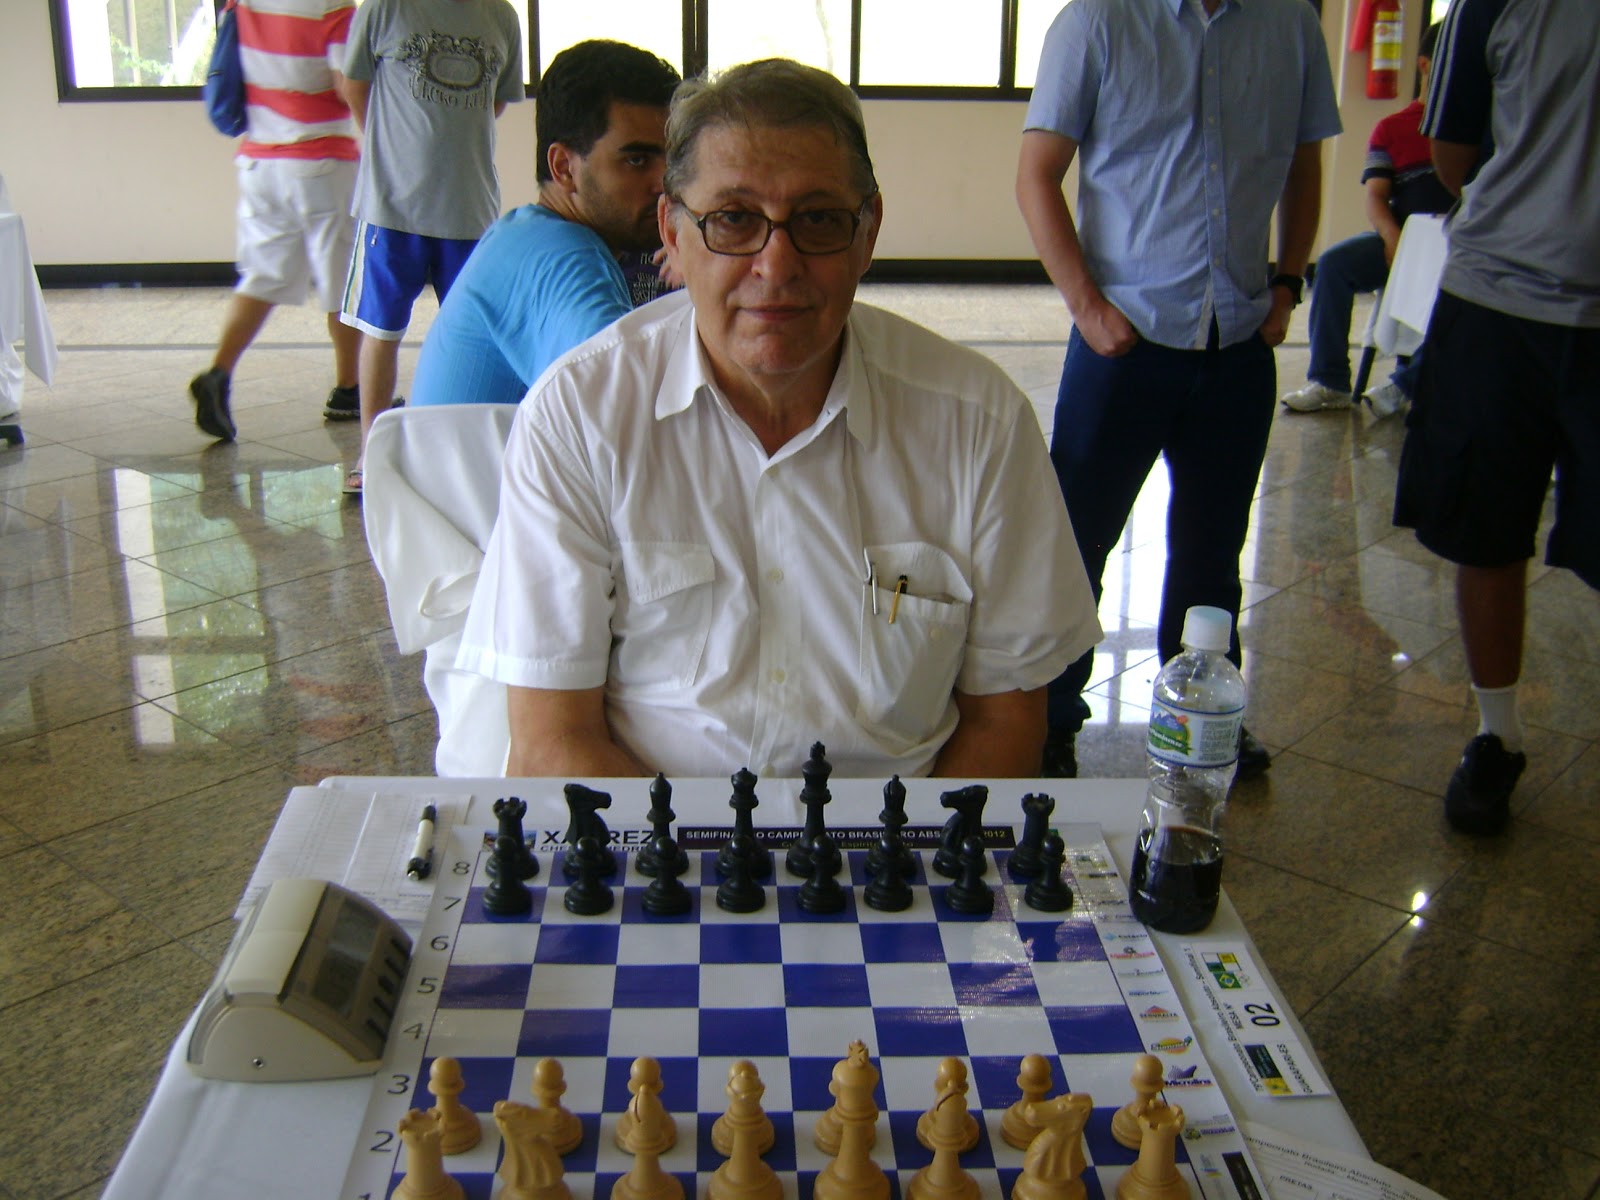 Grande Mestre Brasileiro Krikor enfrenta vários ao mesmo tempo